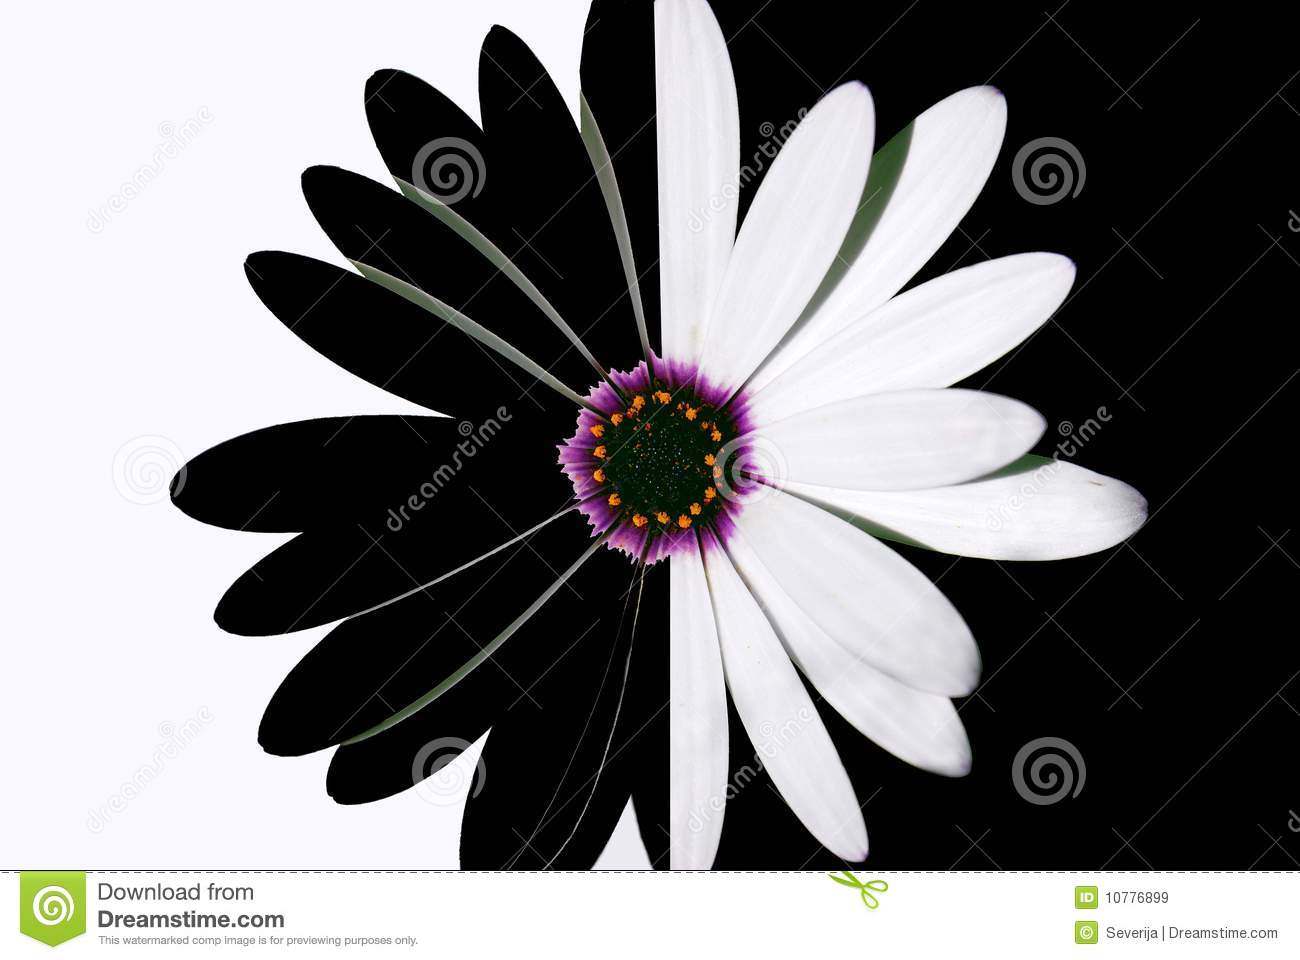 fleur-noire-et-blanche-10776899.jpg